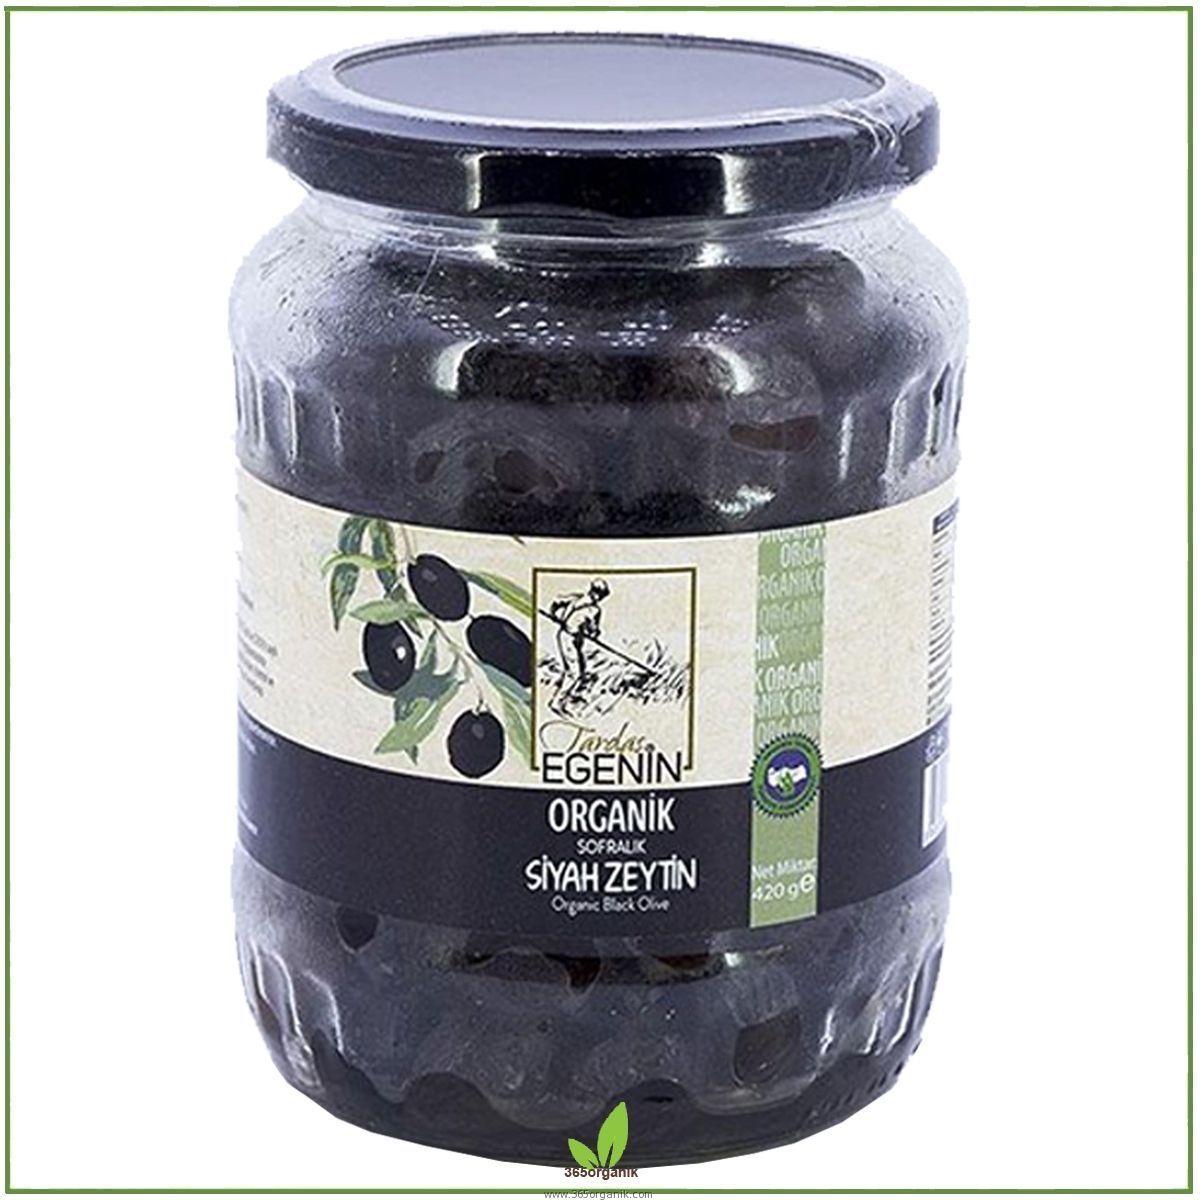 Tardaş Egenin Organik Sofralık Siyah Zeytin - 420 gr | Tardaş Egenin | Organik Zeytinler - Zeytinezmeleri | 